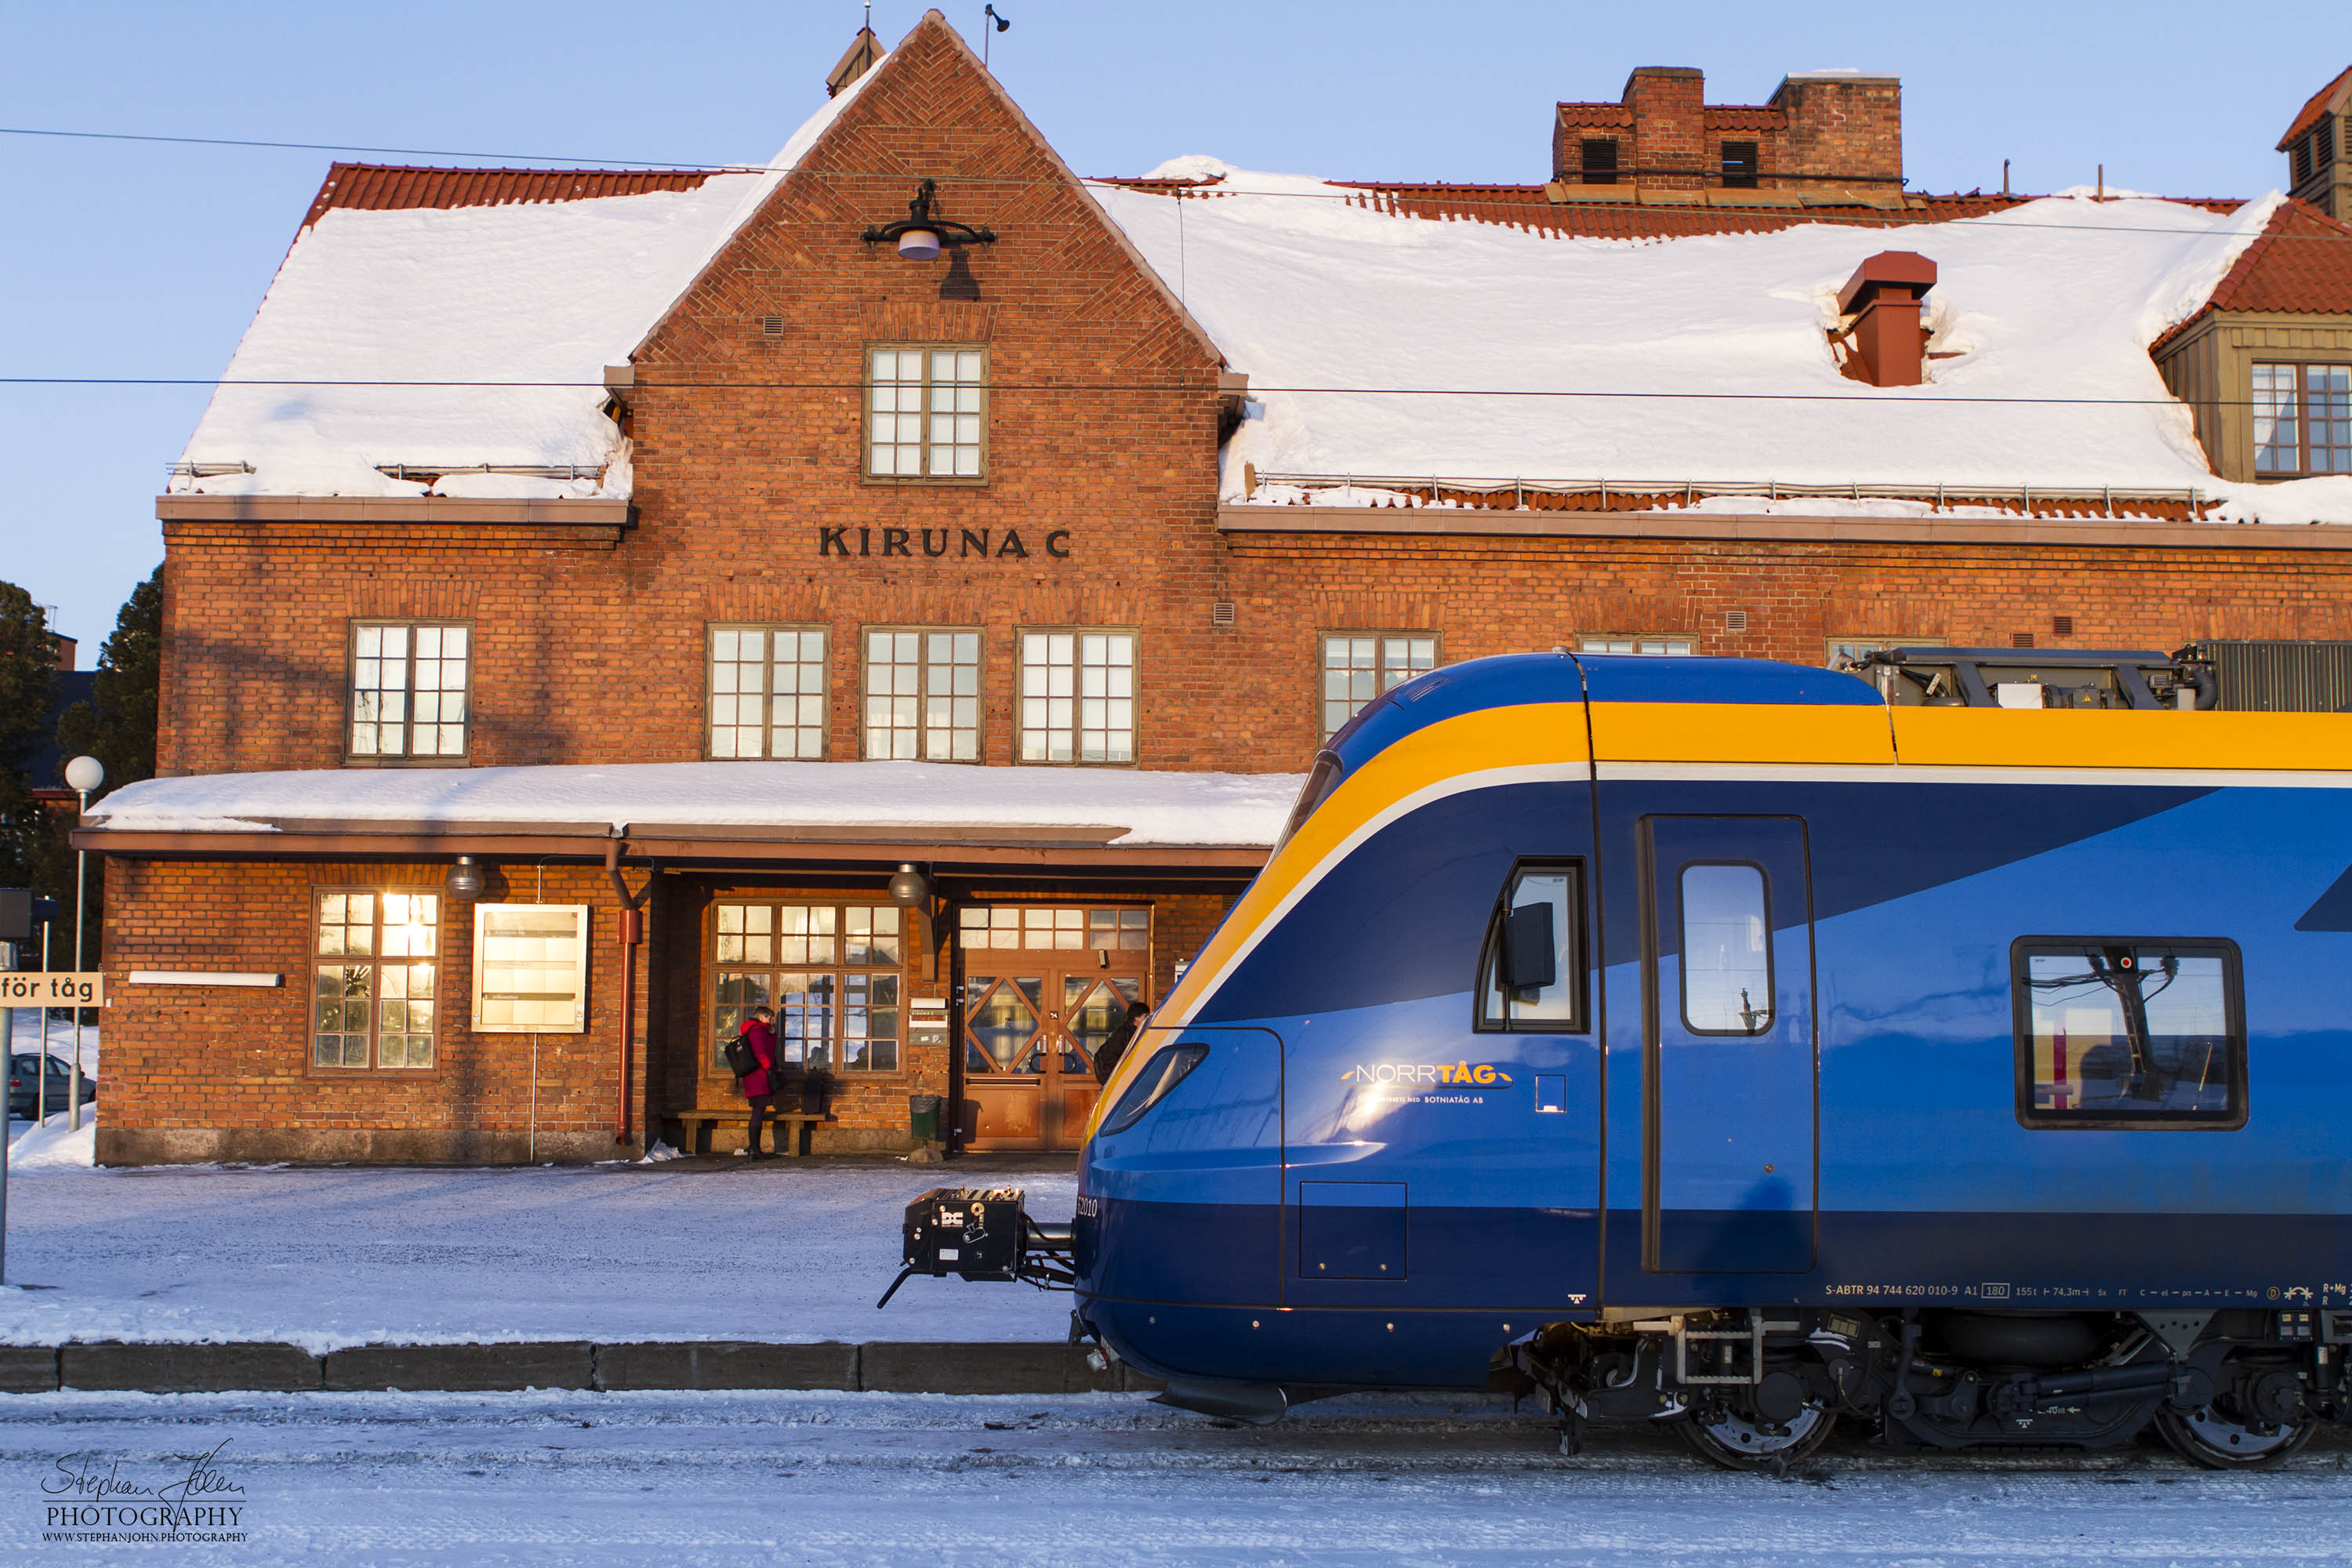 X62 als Norrtåg 7159 (Betreiber: Botniatåg) in Kiruna vor der Abfahrt. Da mittlerweile der Bahnhof nicht mehr existiert gab es nur eine kurze Zeit für den neuen X62 im alten Bahnhof.